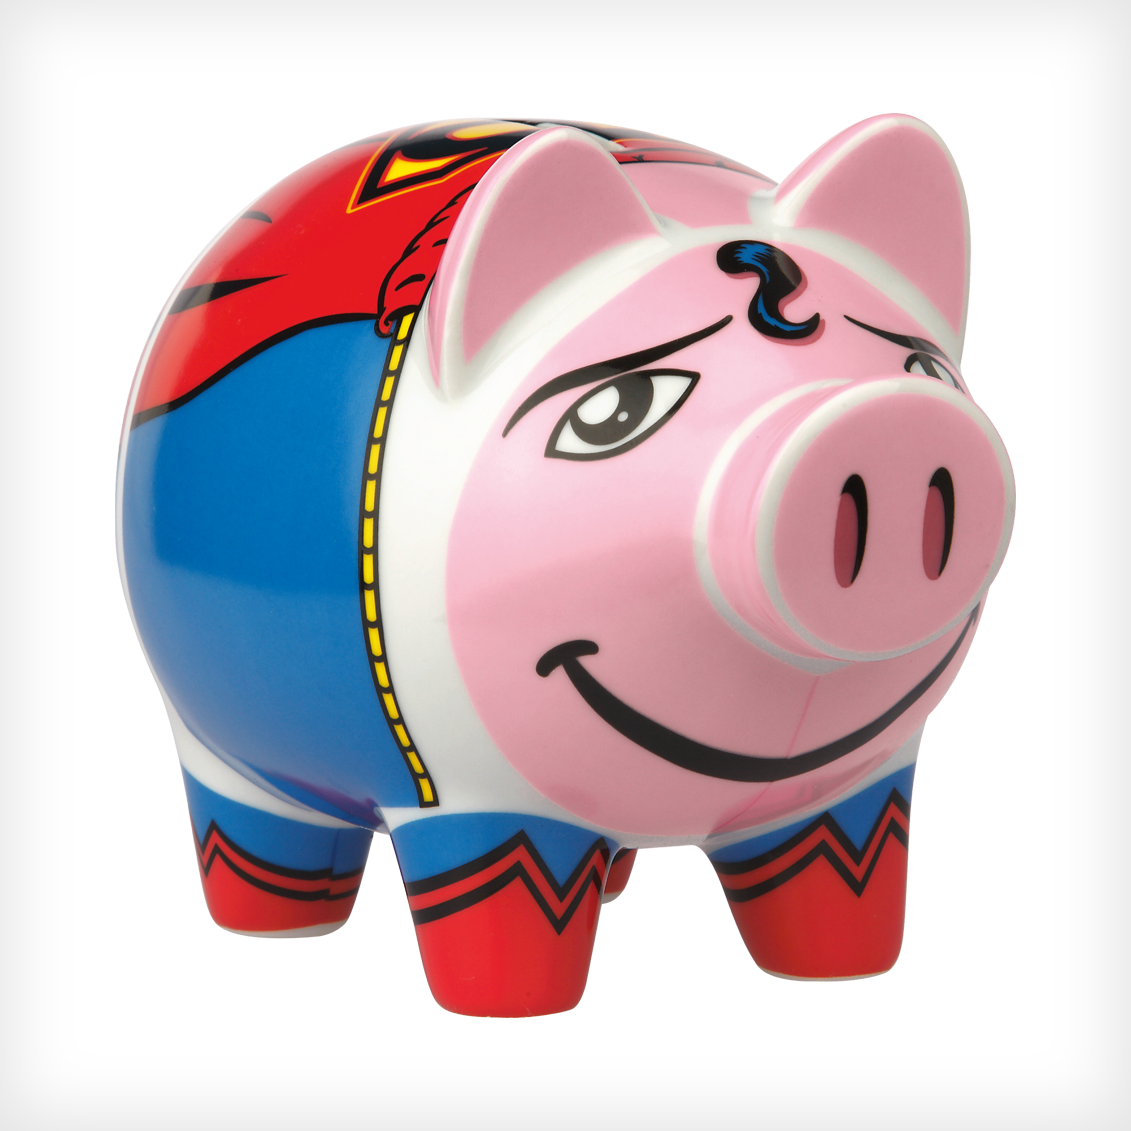 “Pork Kent” Piggy Bank for Ritzenhoff